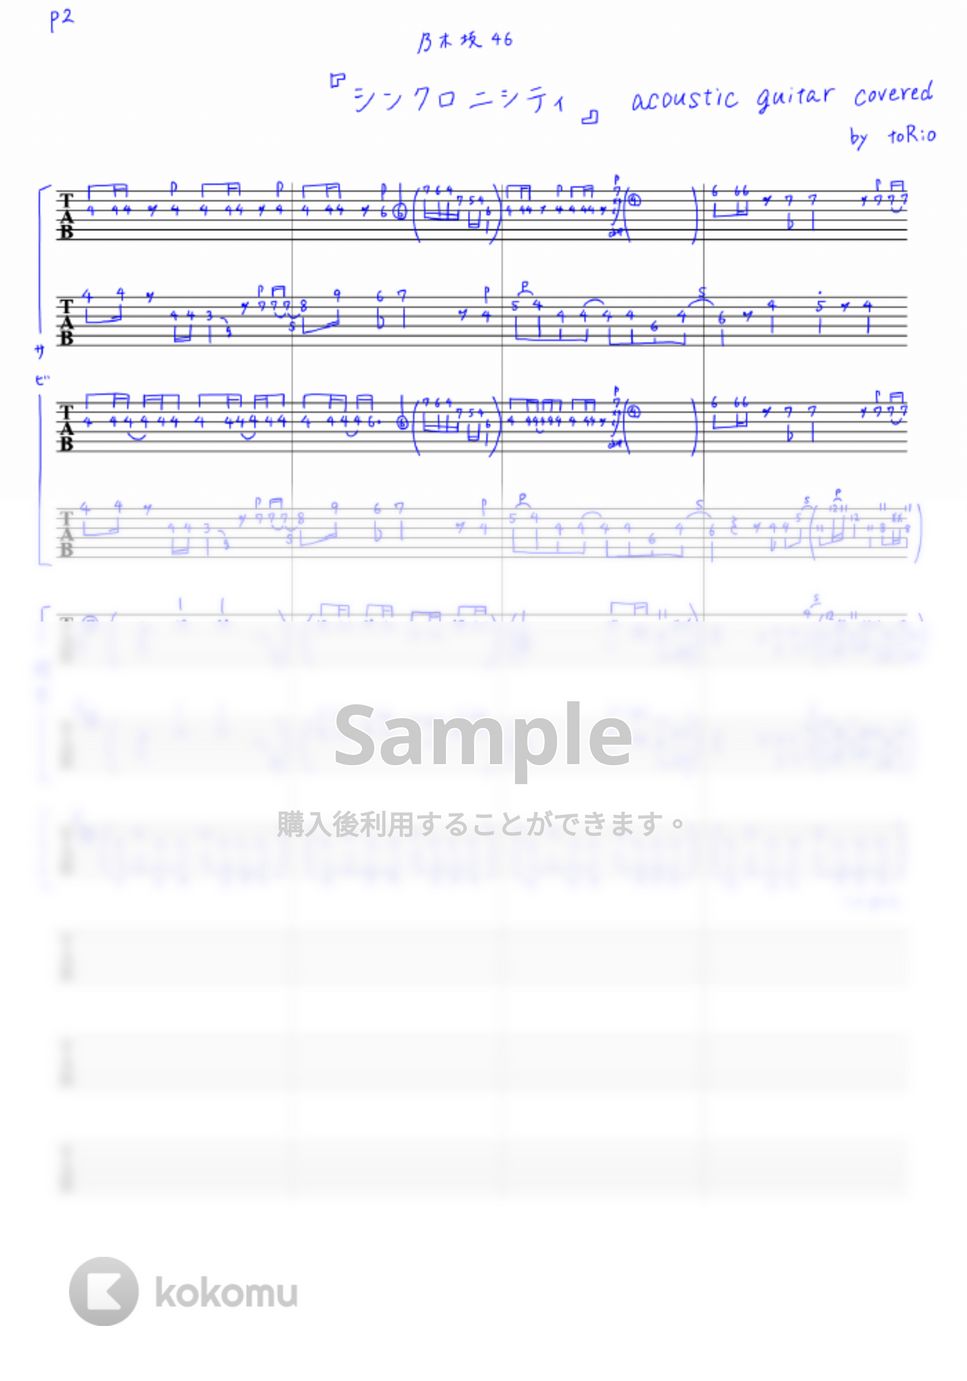 乃木坂46 - シンクロニシティ (アコースティックギターのインストcover) by toRio